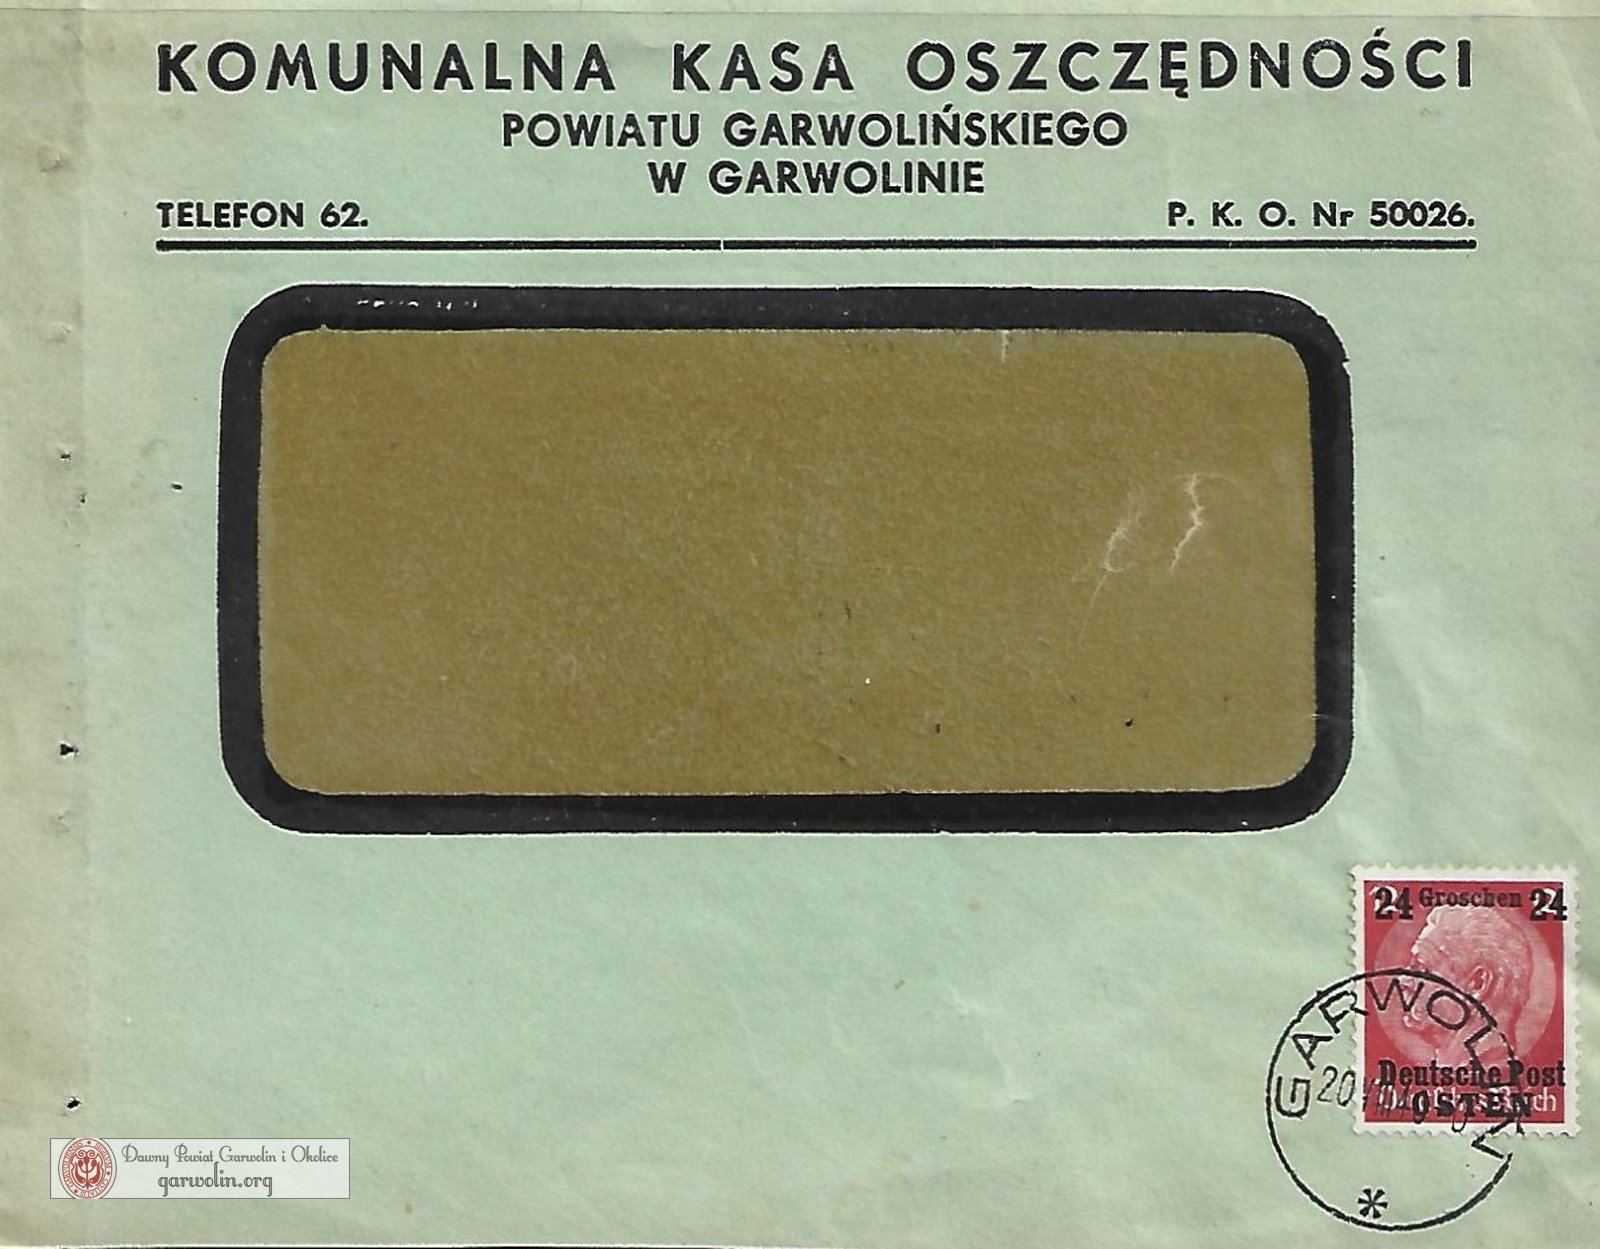 Koperta firmowa Komunalnej Kasy Oszczędności - 1940 r.